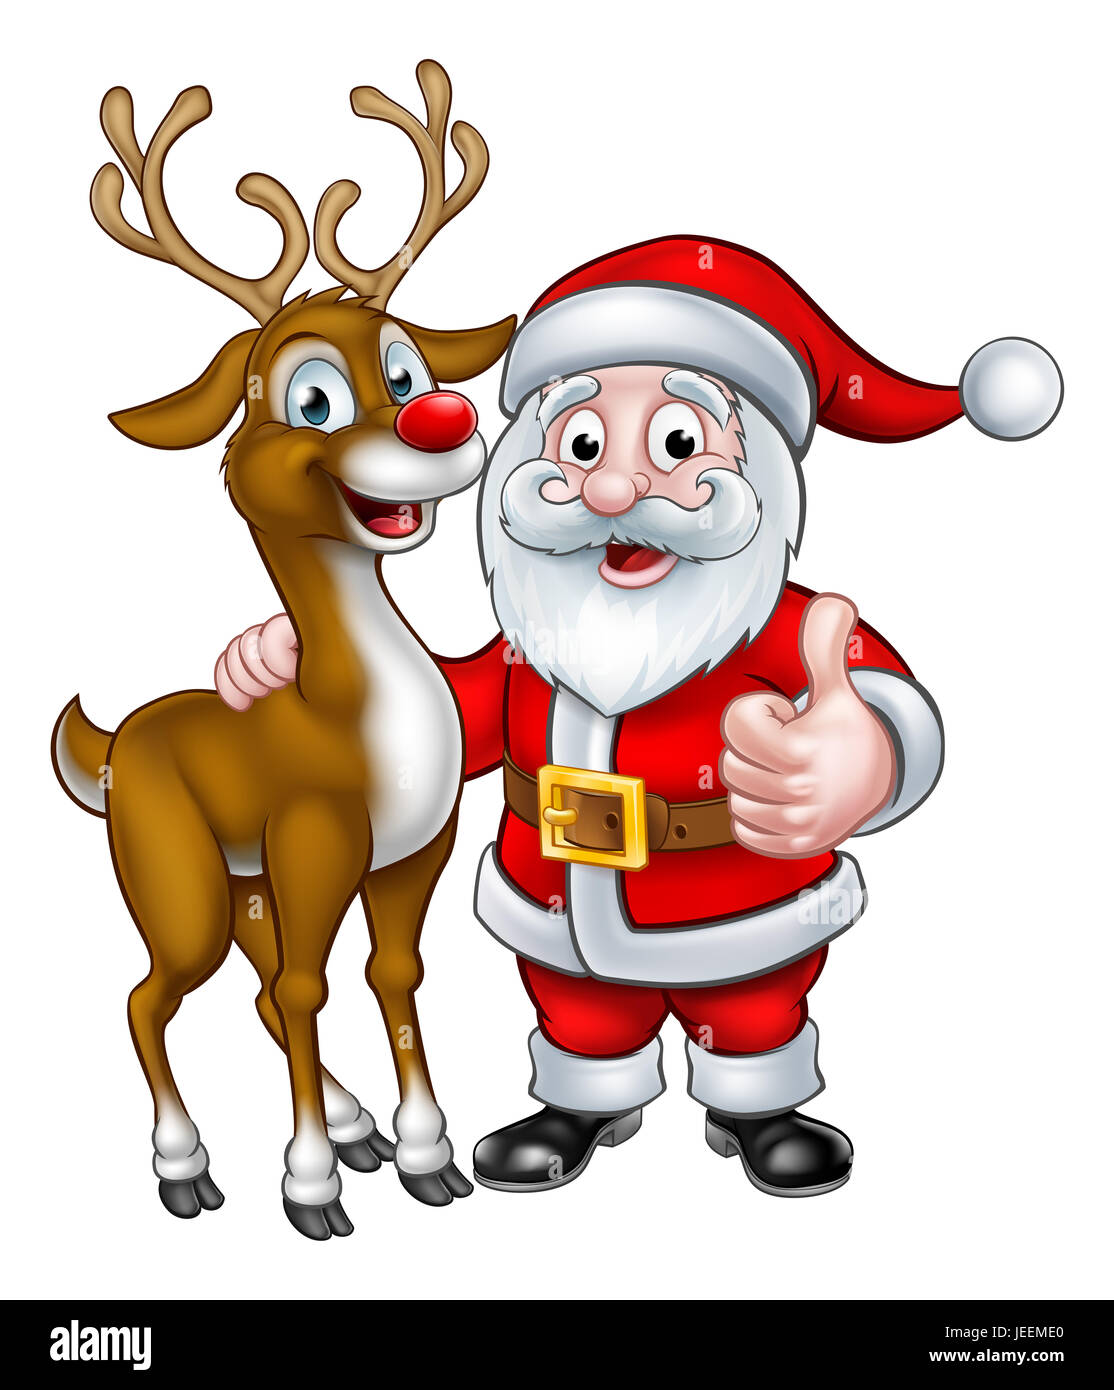 Santa Und Seine Rentiere Weihnachten Comic Figuren Stockfotografie Alamy